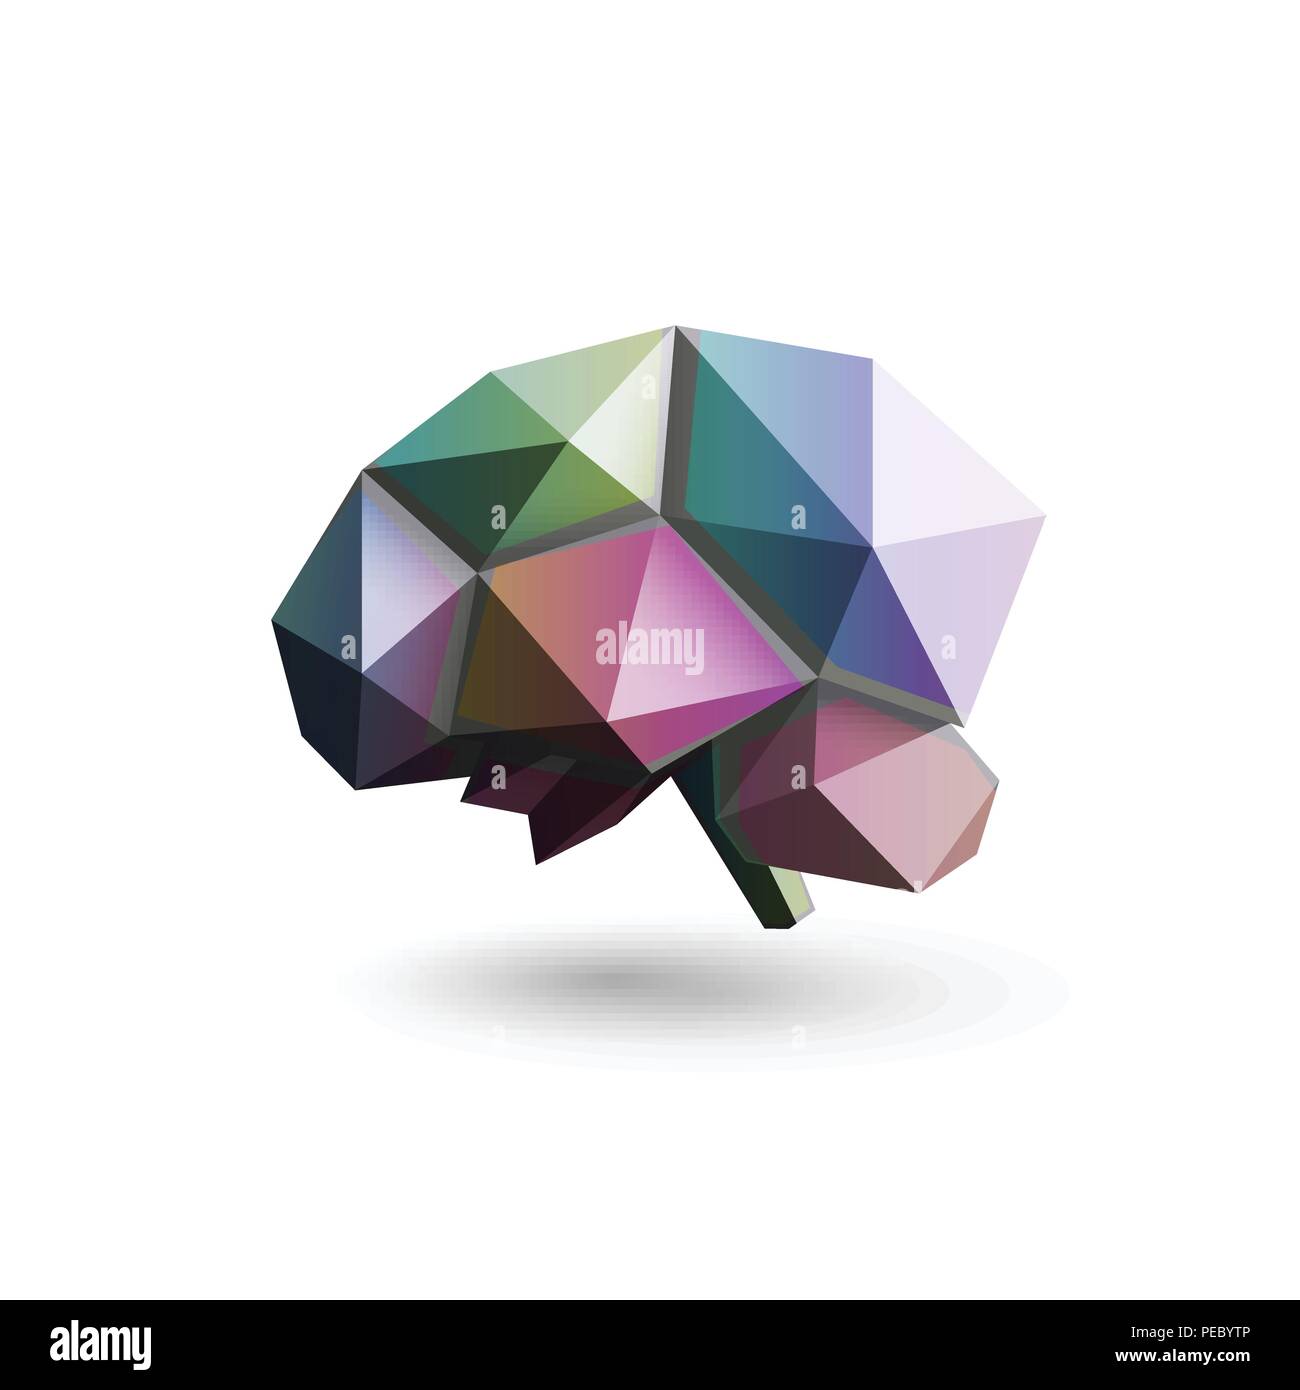 Cervello colorate, poligonale design, illustrazione vettoriale. La scienza laboratorio di ricerca e sviluppo del modello di logo. Apprendimento del cervello, brain storming icona moderna. Illustrazione Vettoriale